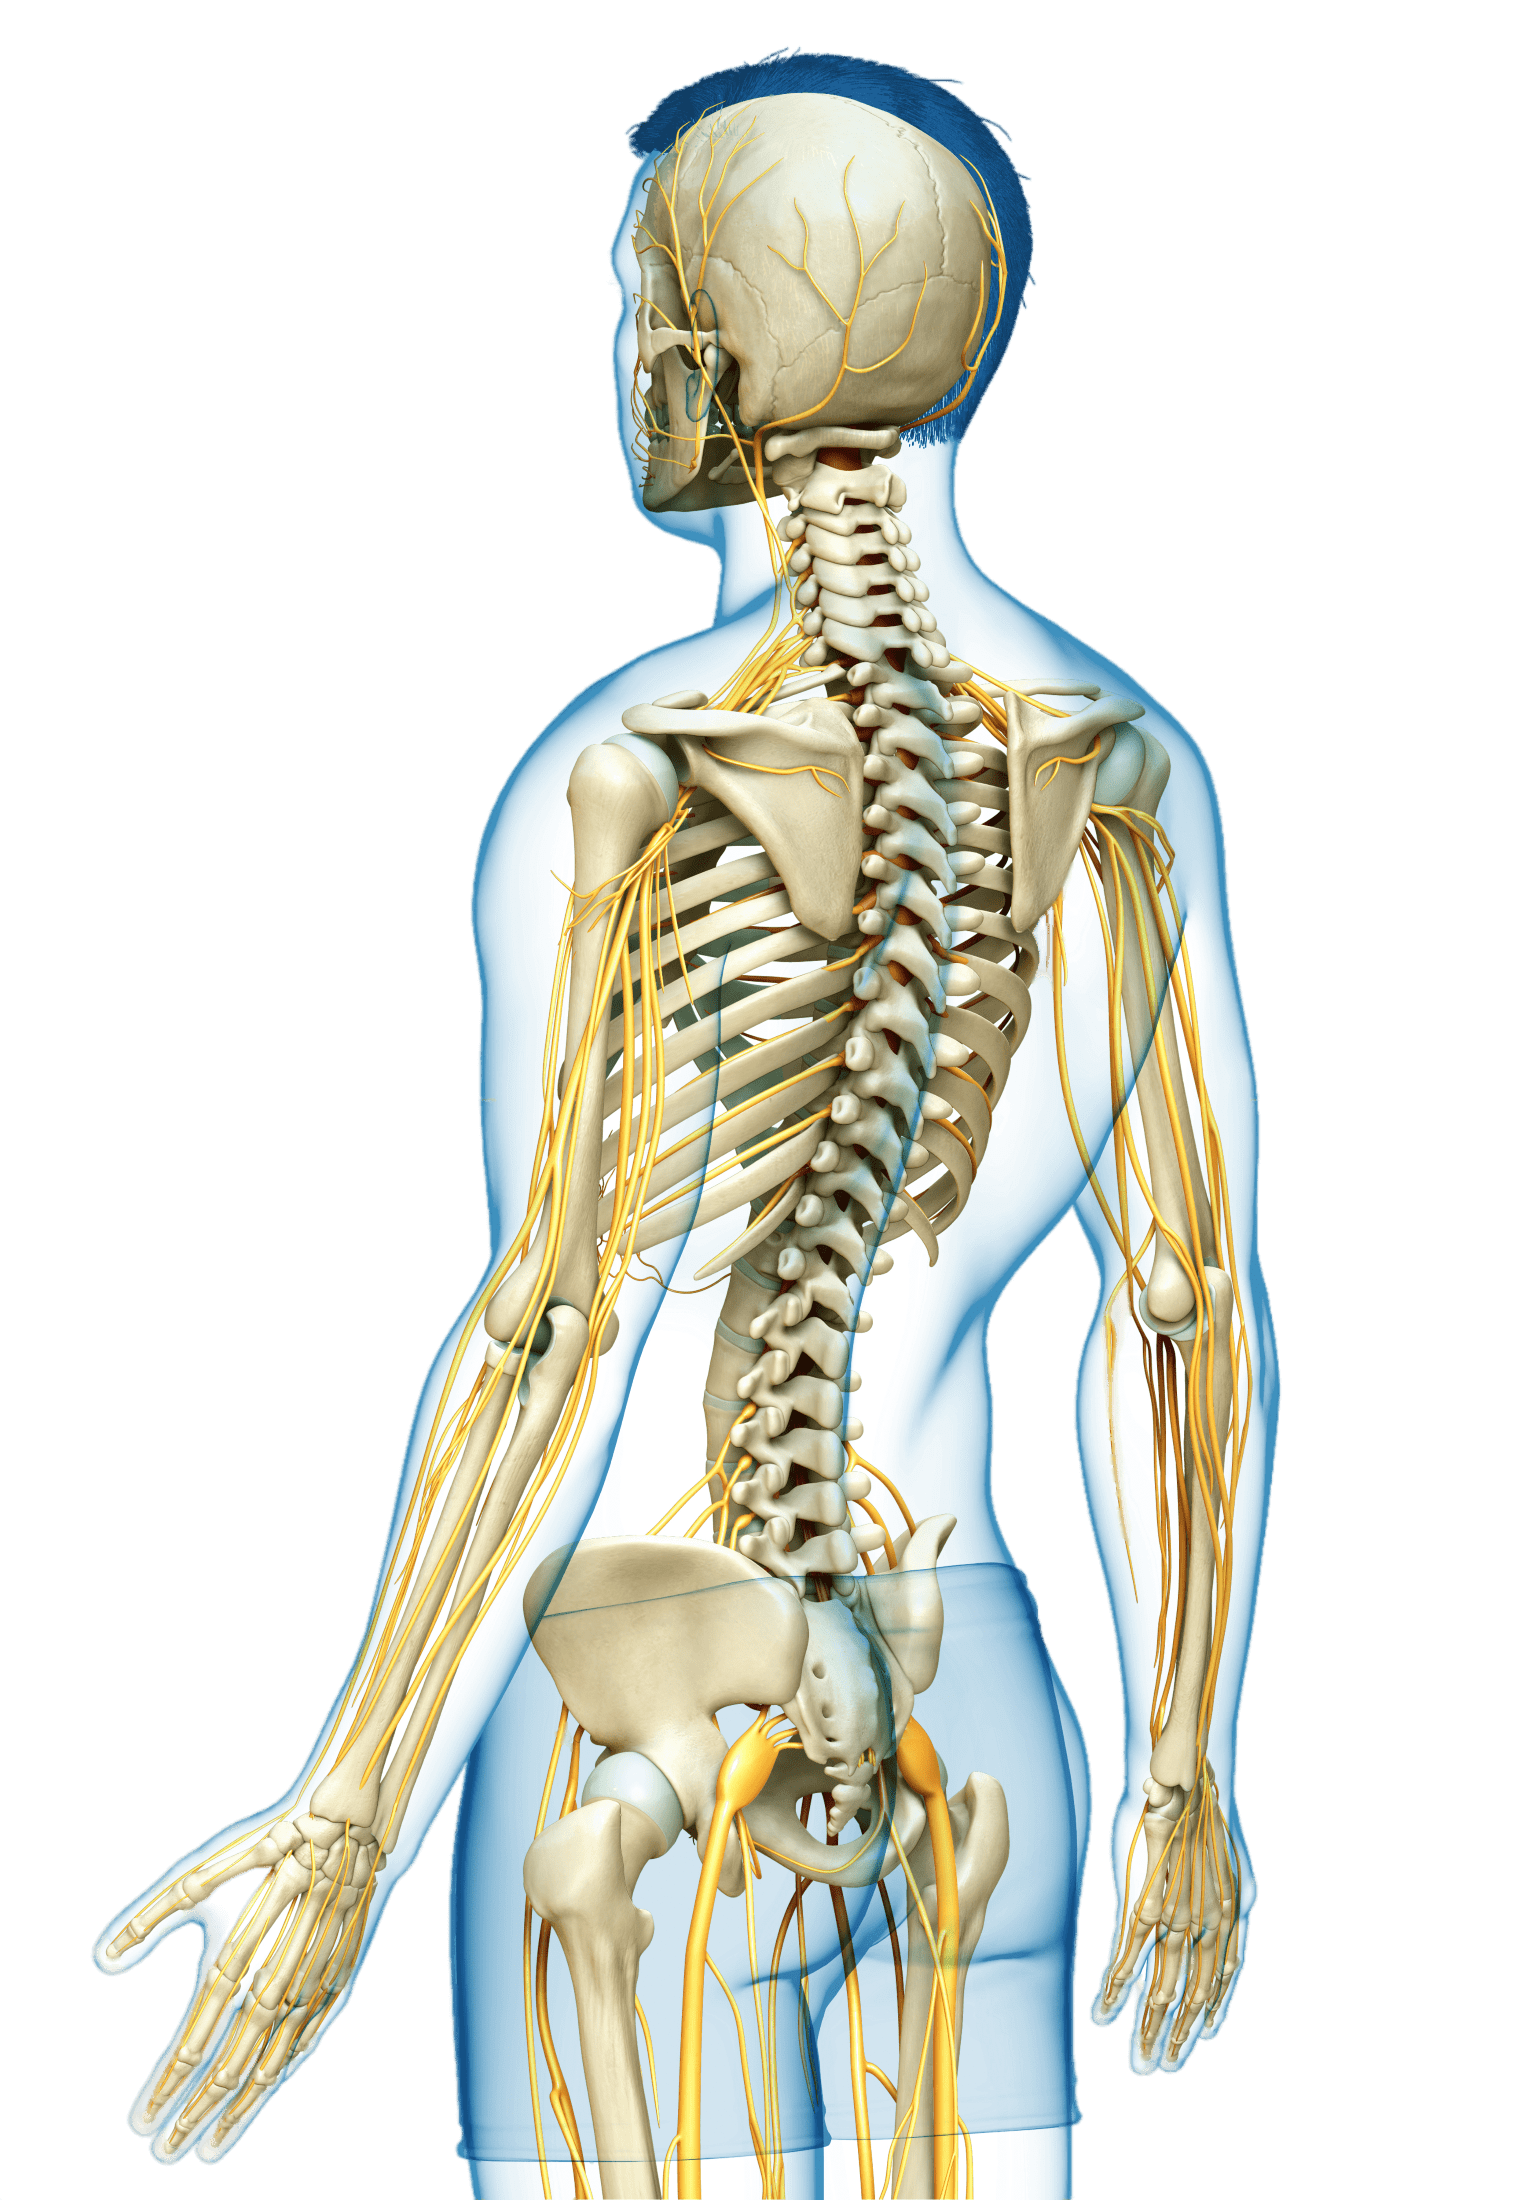 Illustration of a portion of the skeletal system